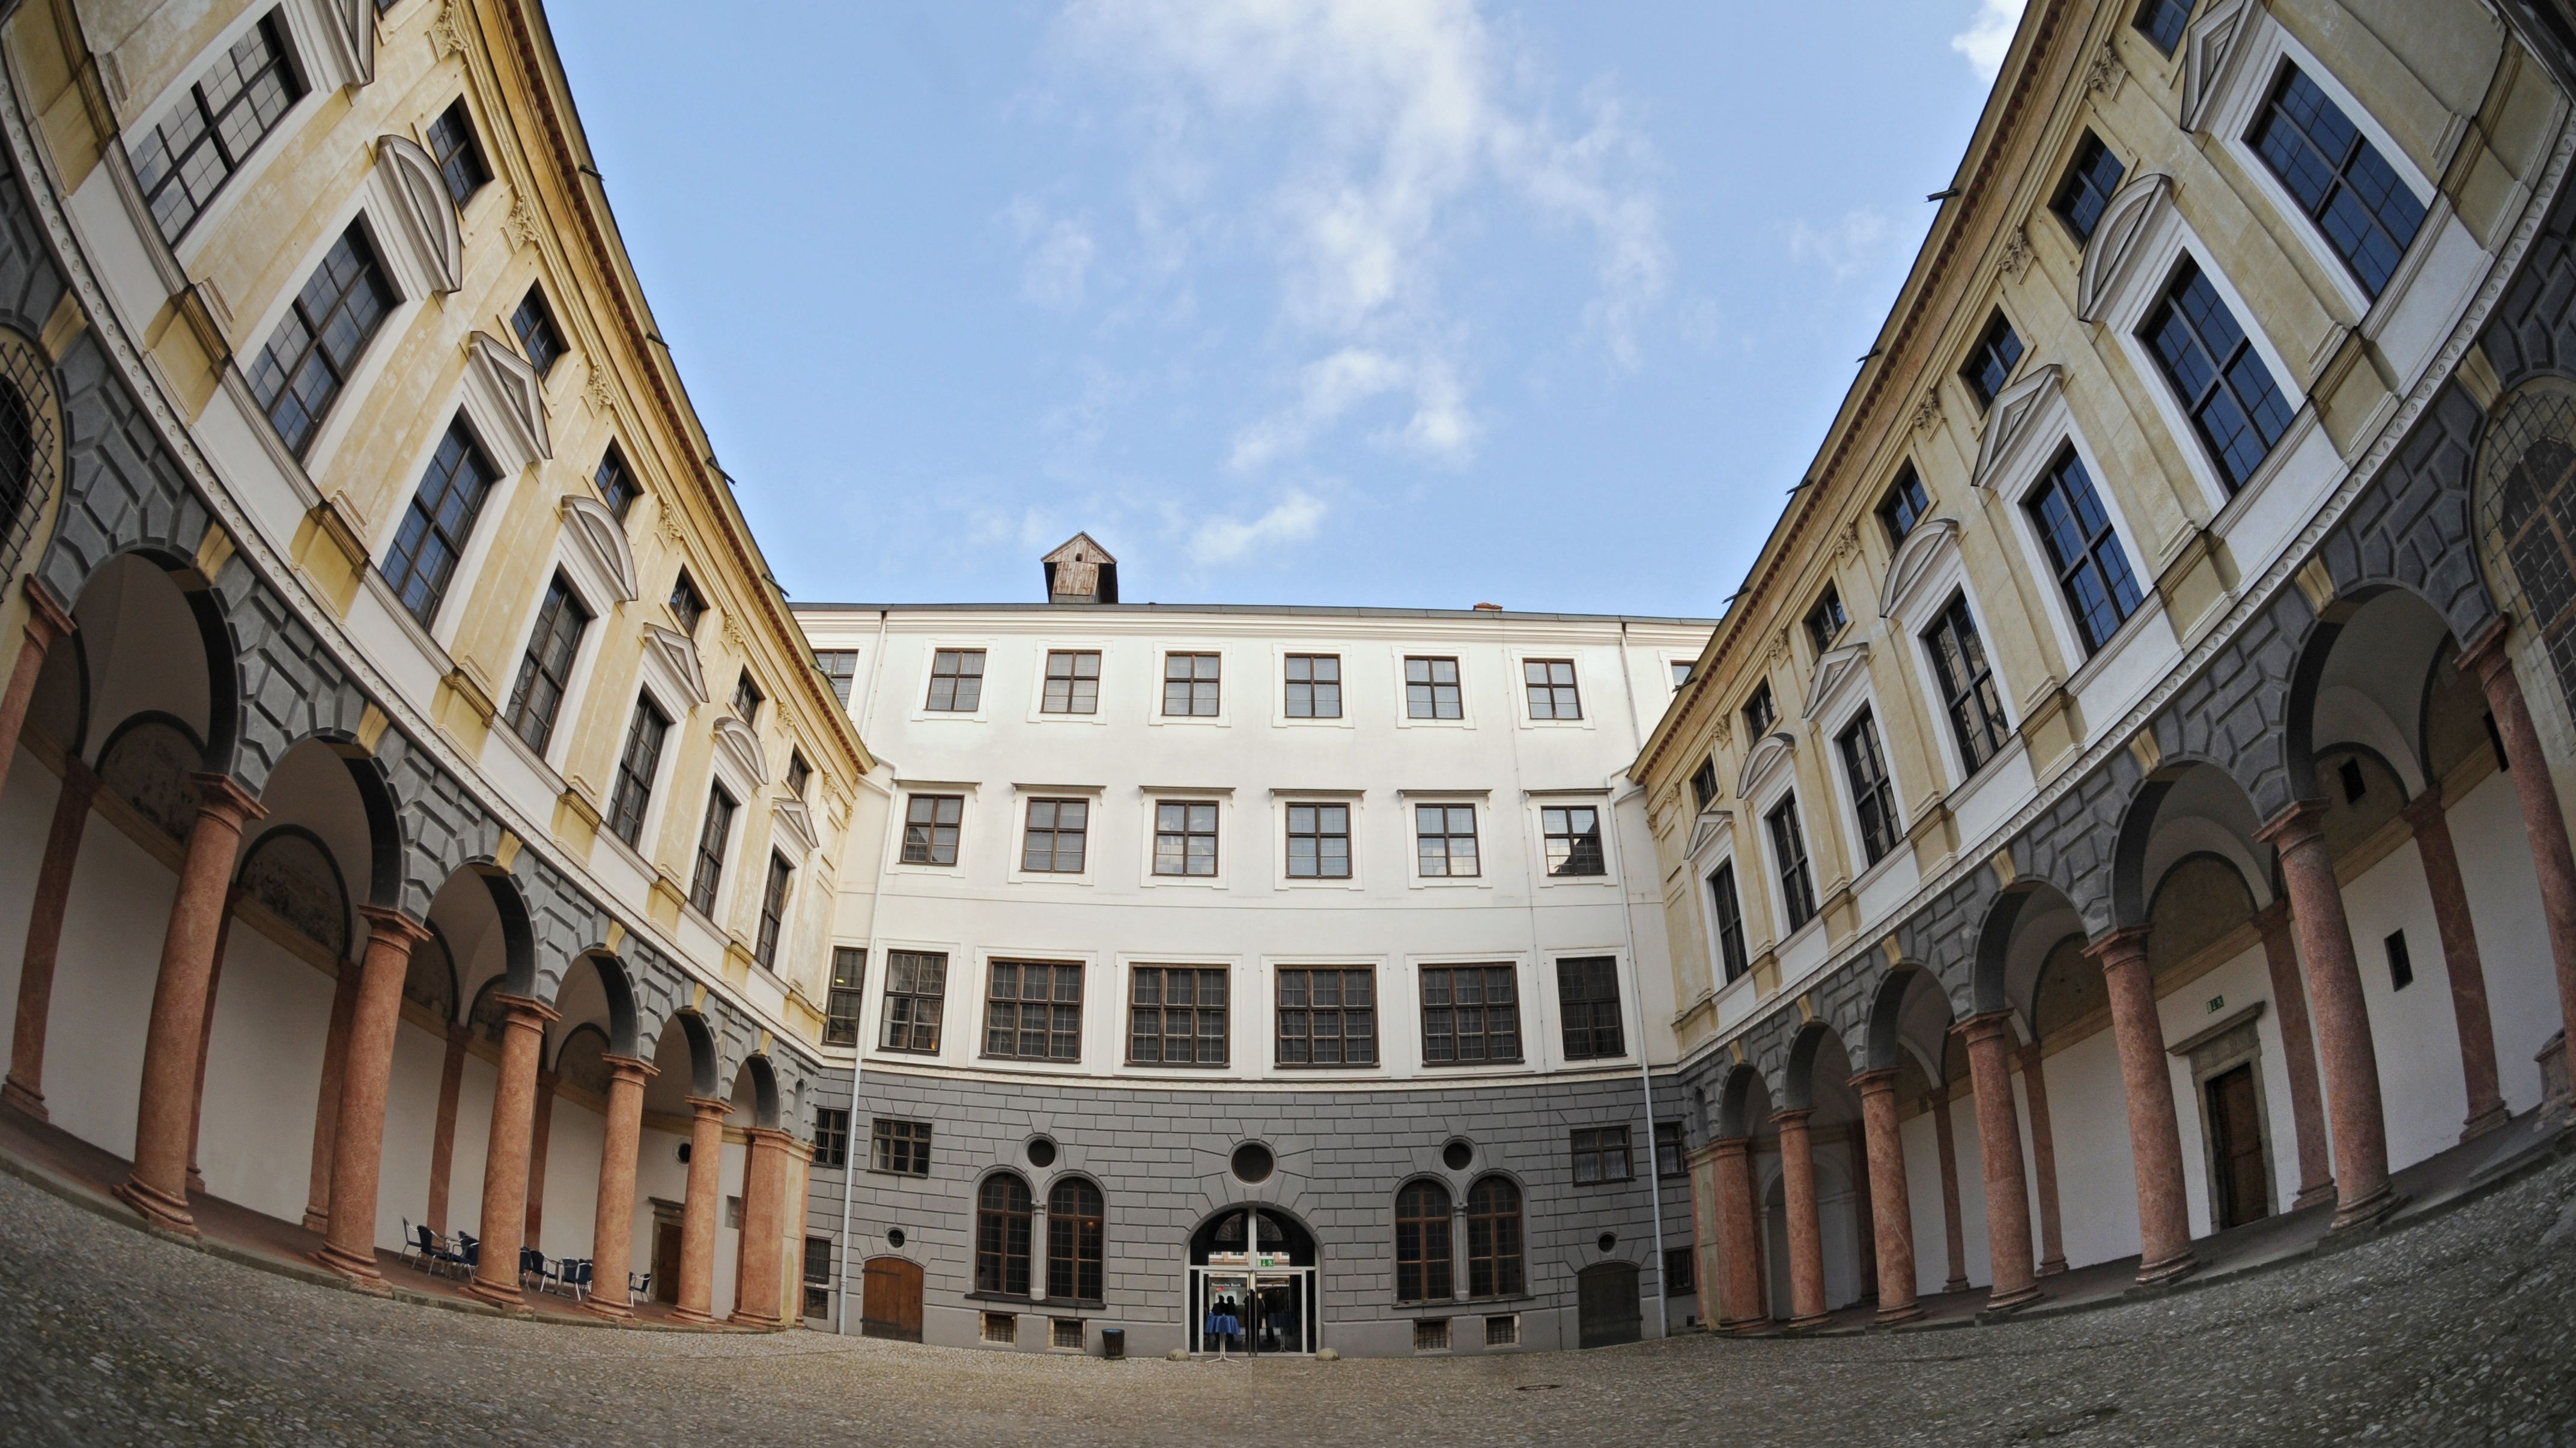 21 Millionen Euro Fur Sanierung Der Stadtresidenz Landshut